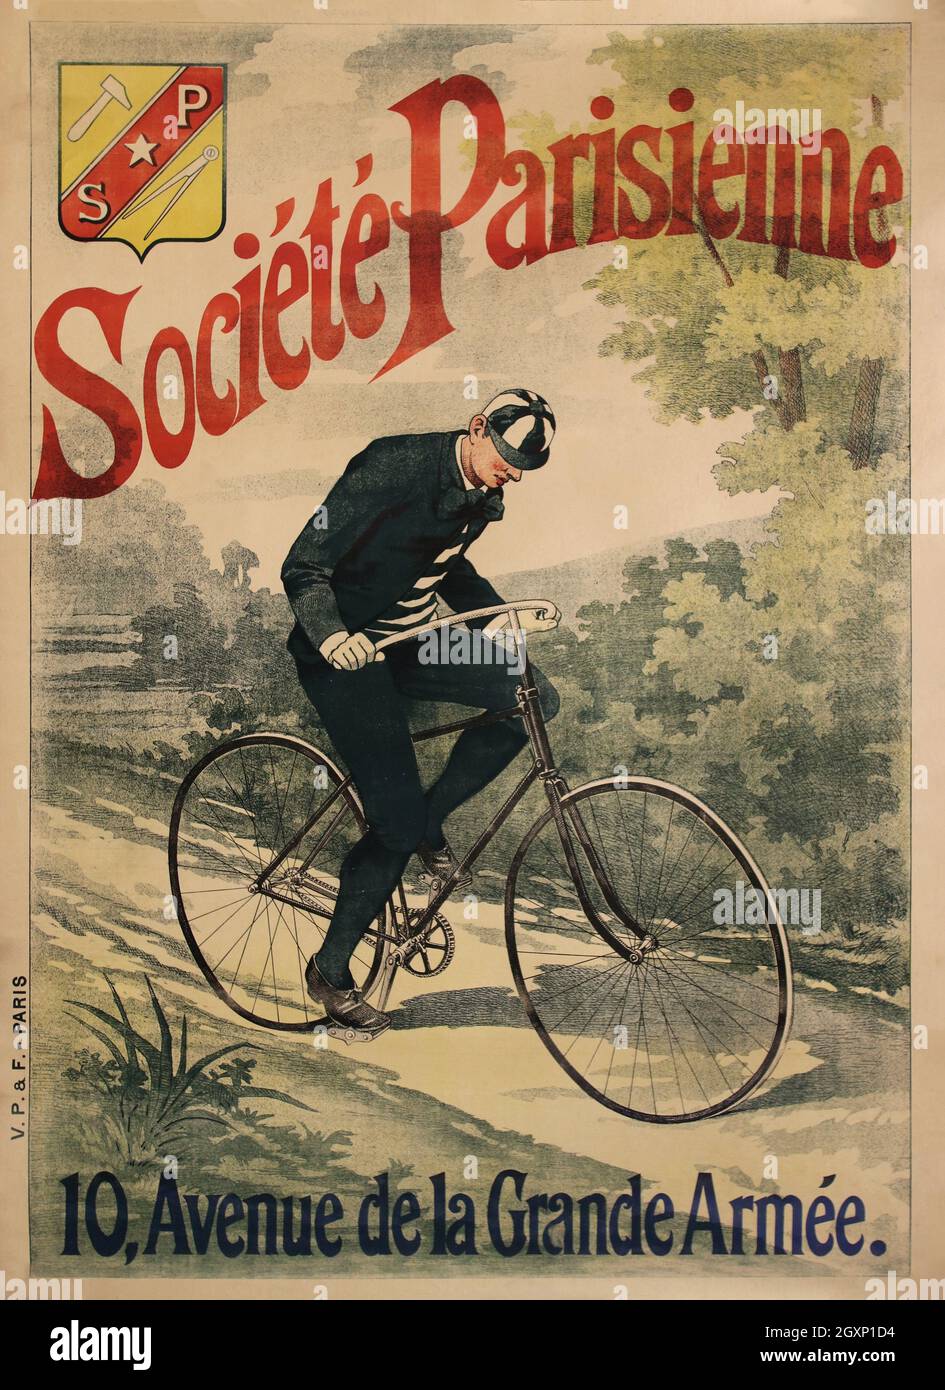 Société Parisienne Stock Photo